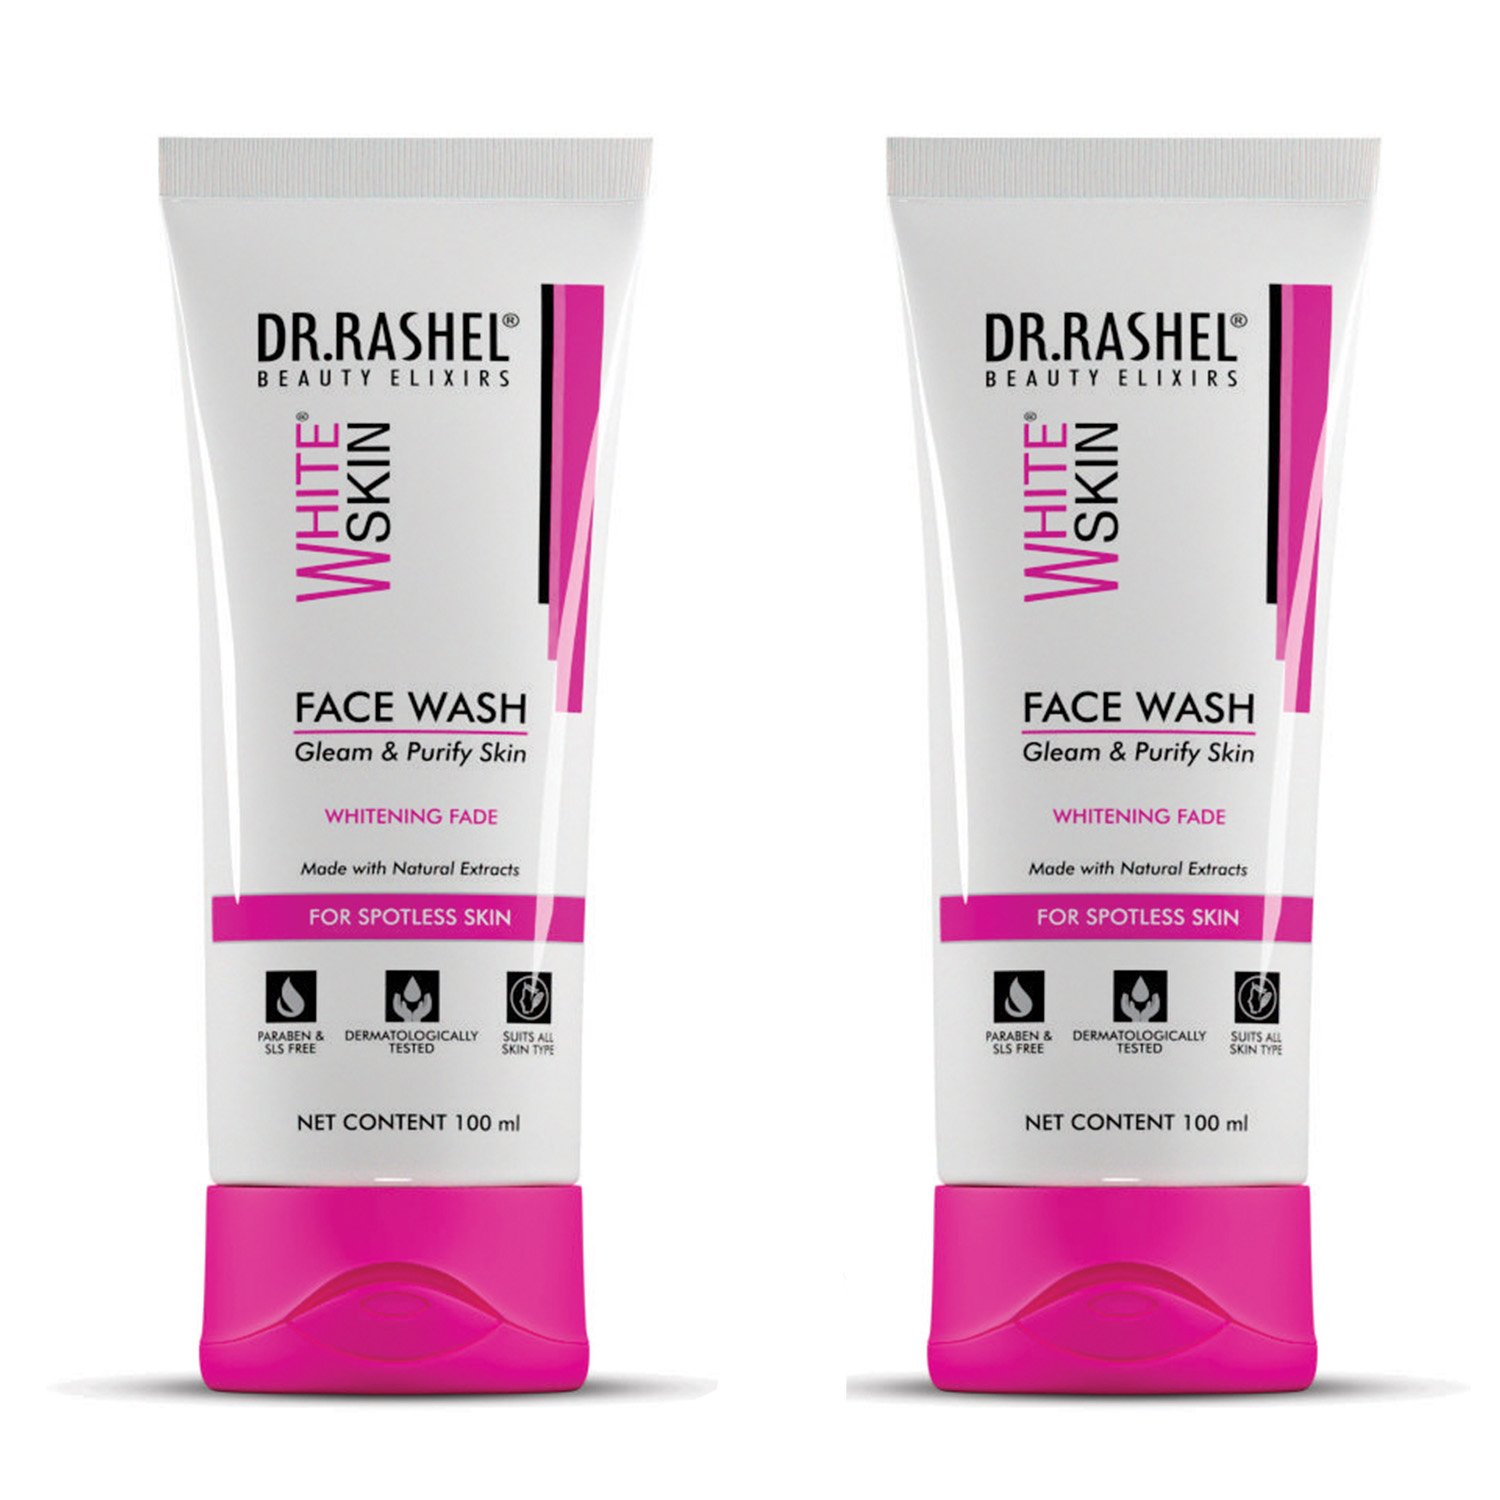 Dr. Rashel Face Wash, 200ml - Pack of 2-White Skin